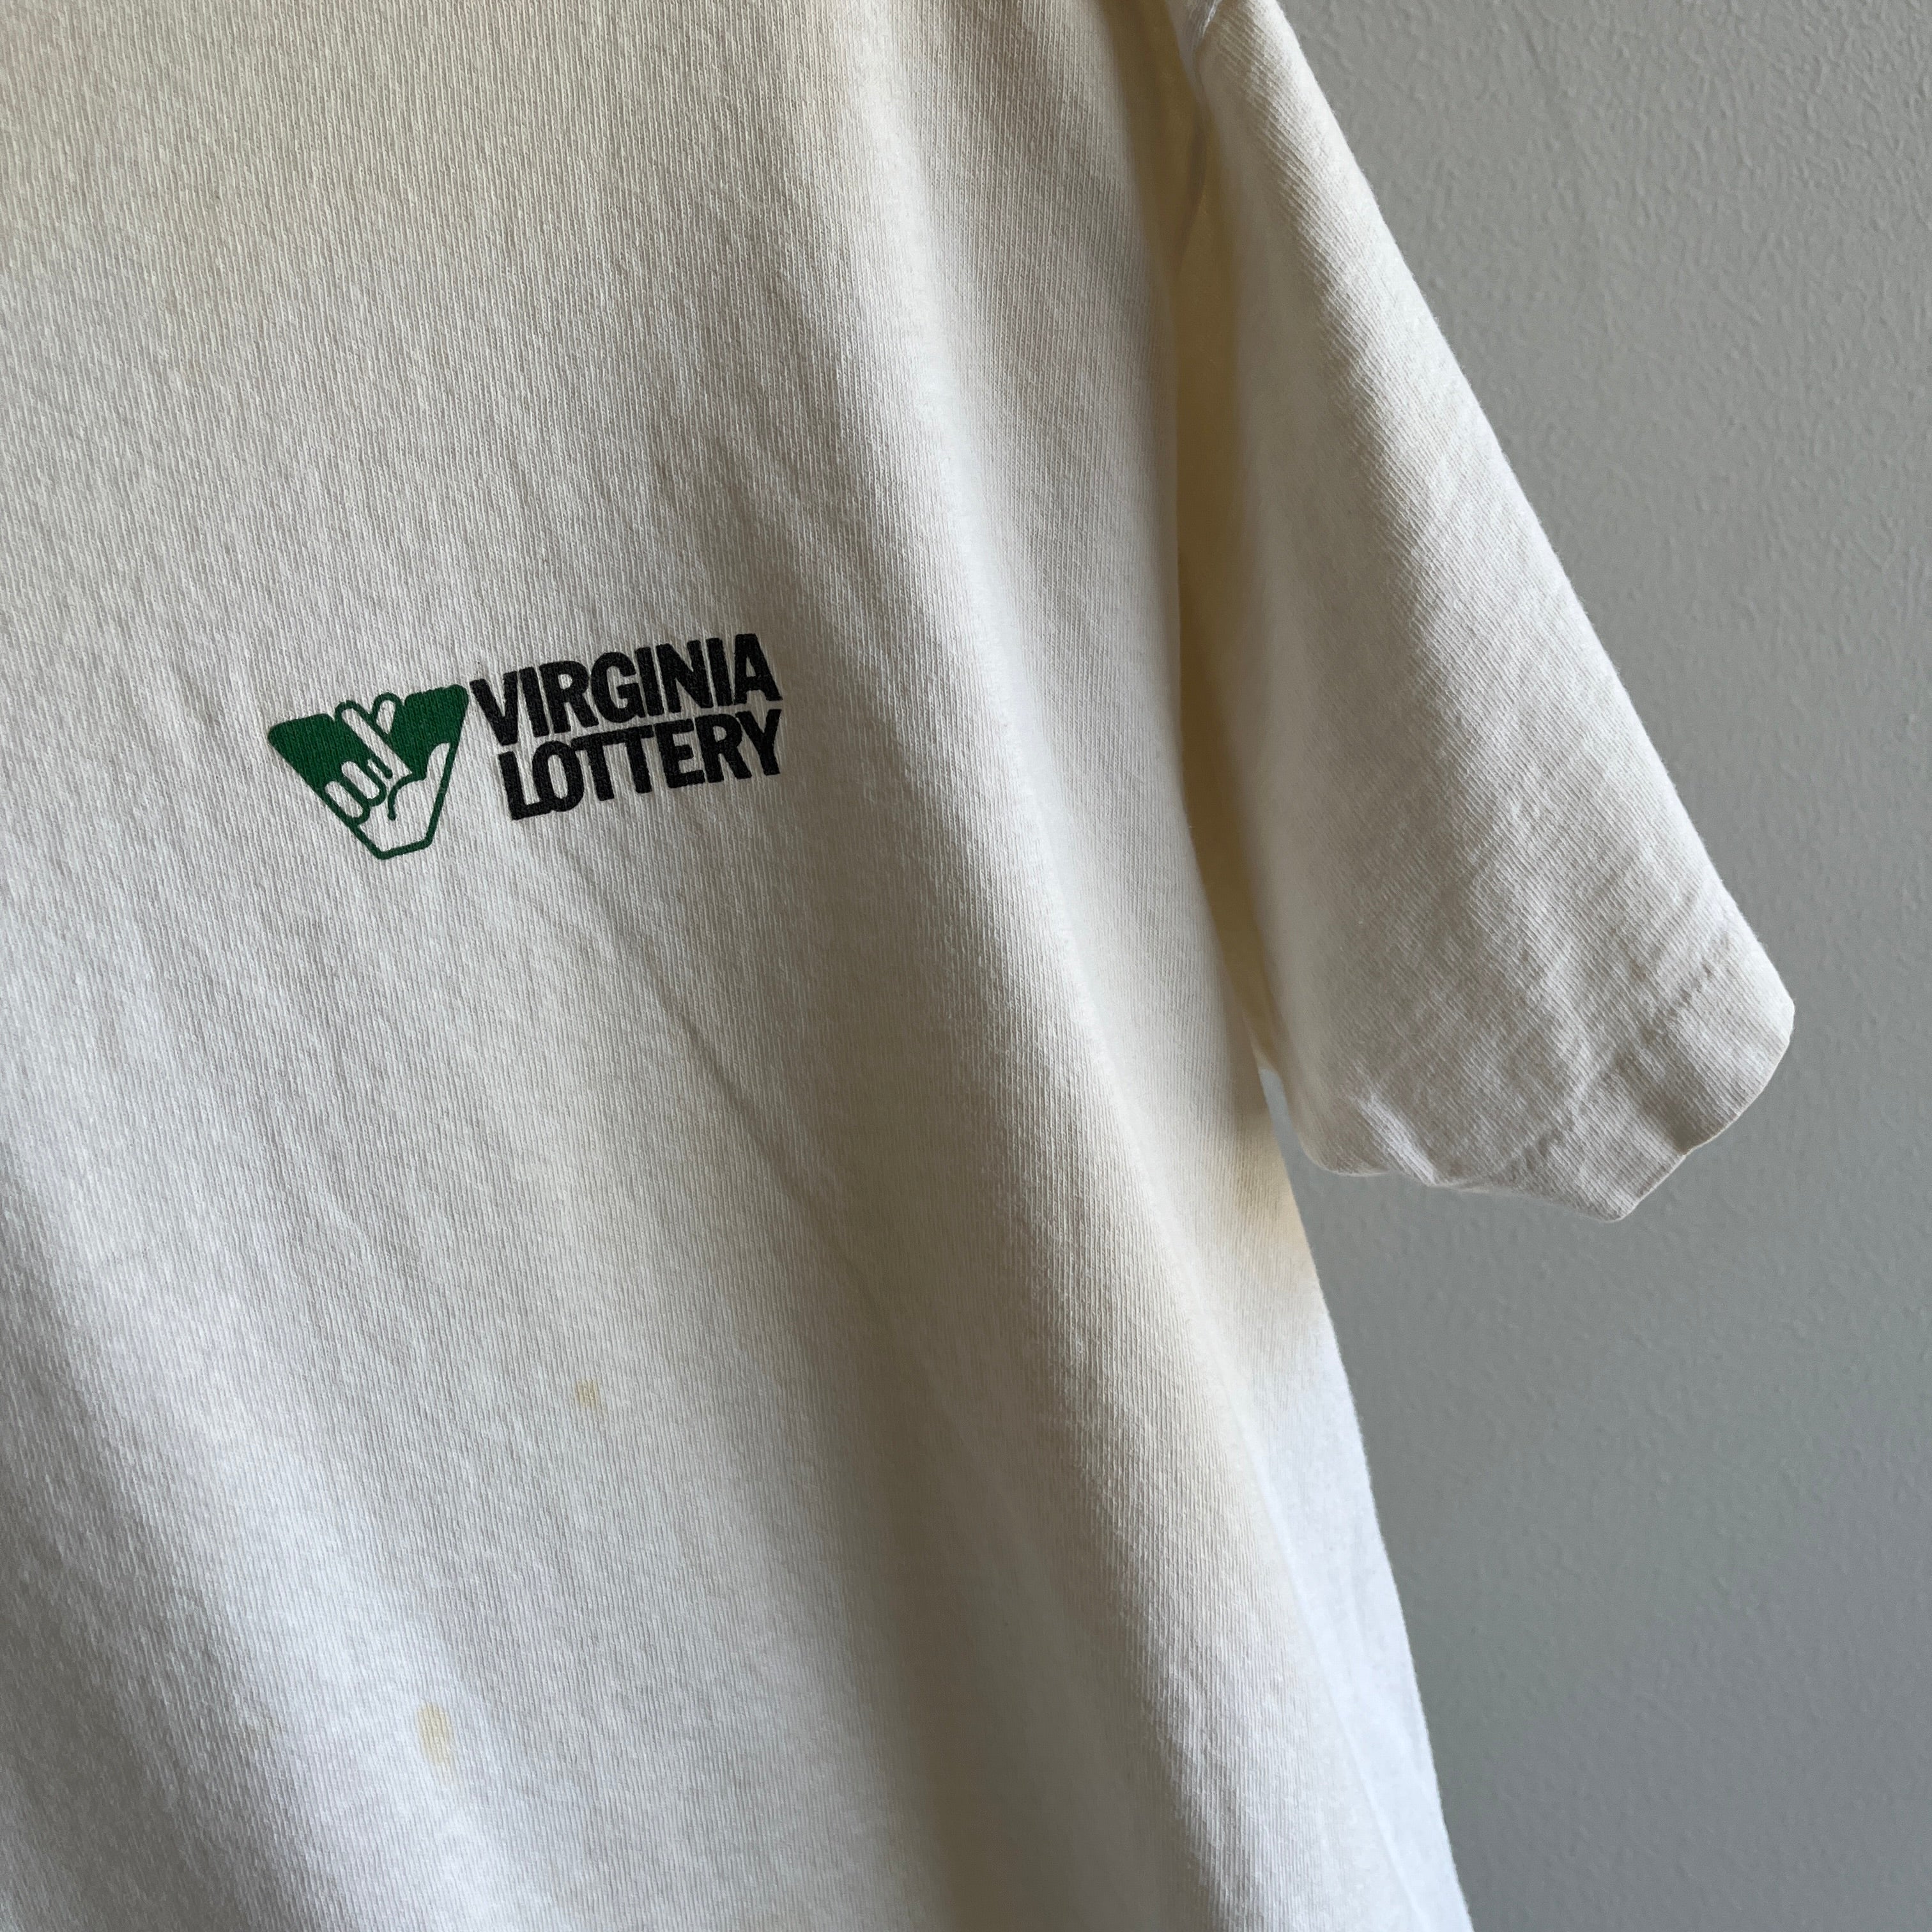 T-shirt blanc des années 1980 de la loterie de Virginie des années 1980